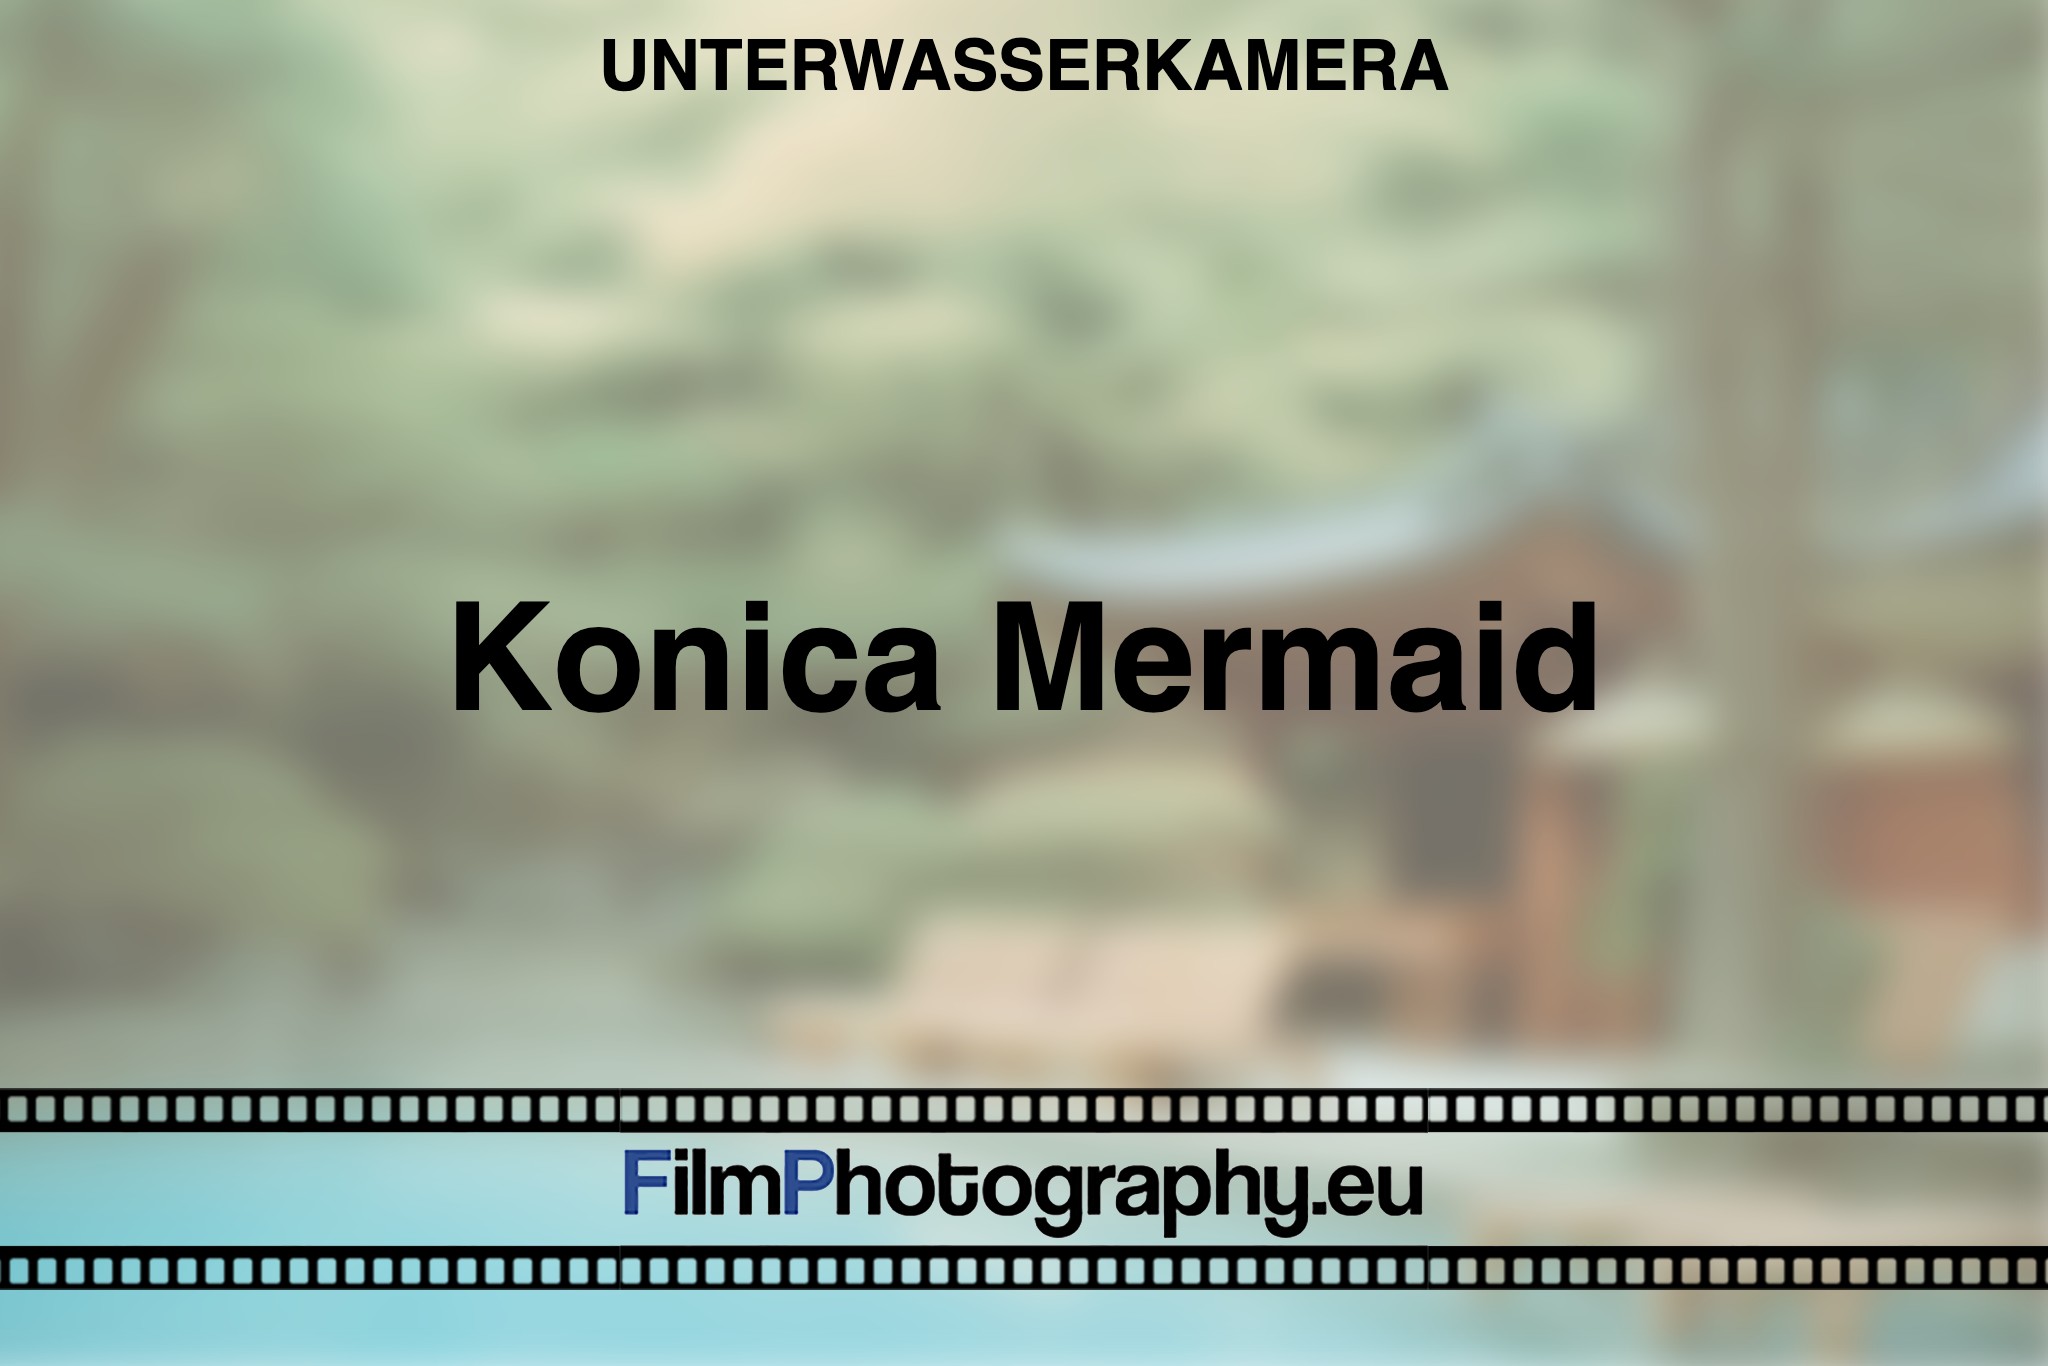 konica-mermaid-unterwasserkamera-bnv